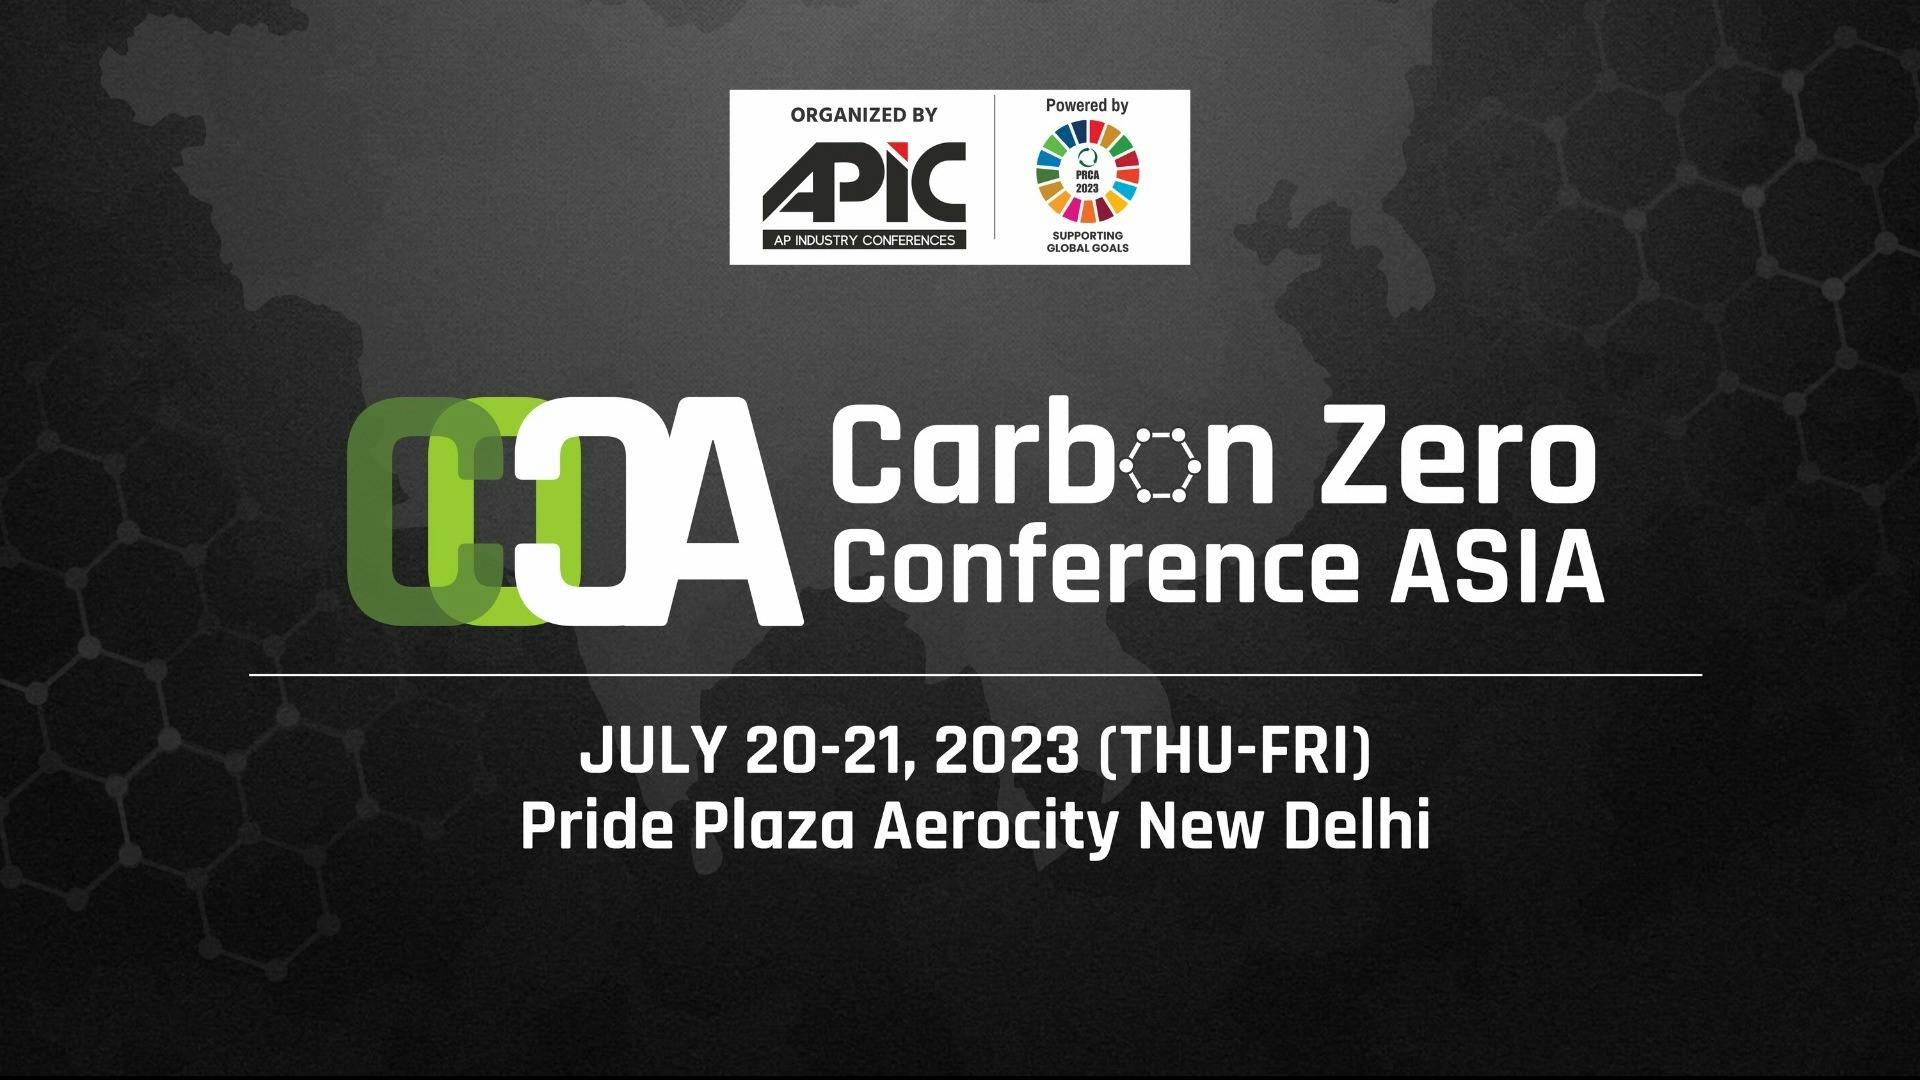 Carbon Zero Conference Asia (C0CA) 2023